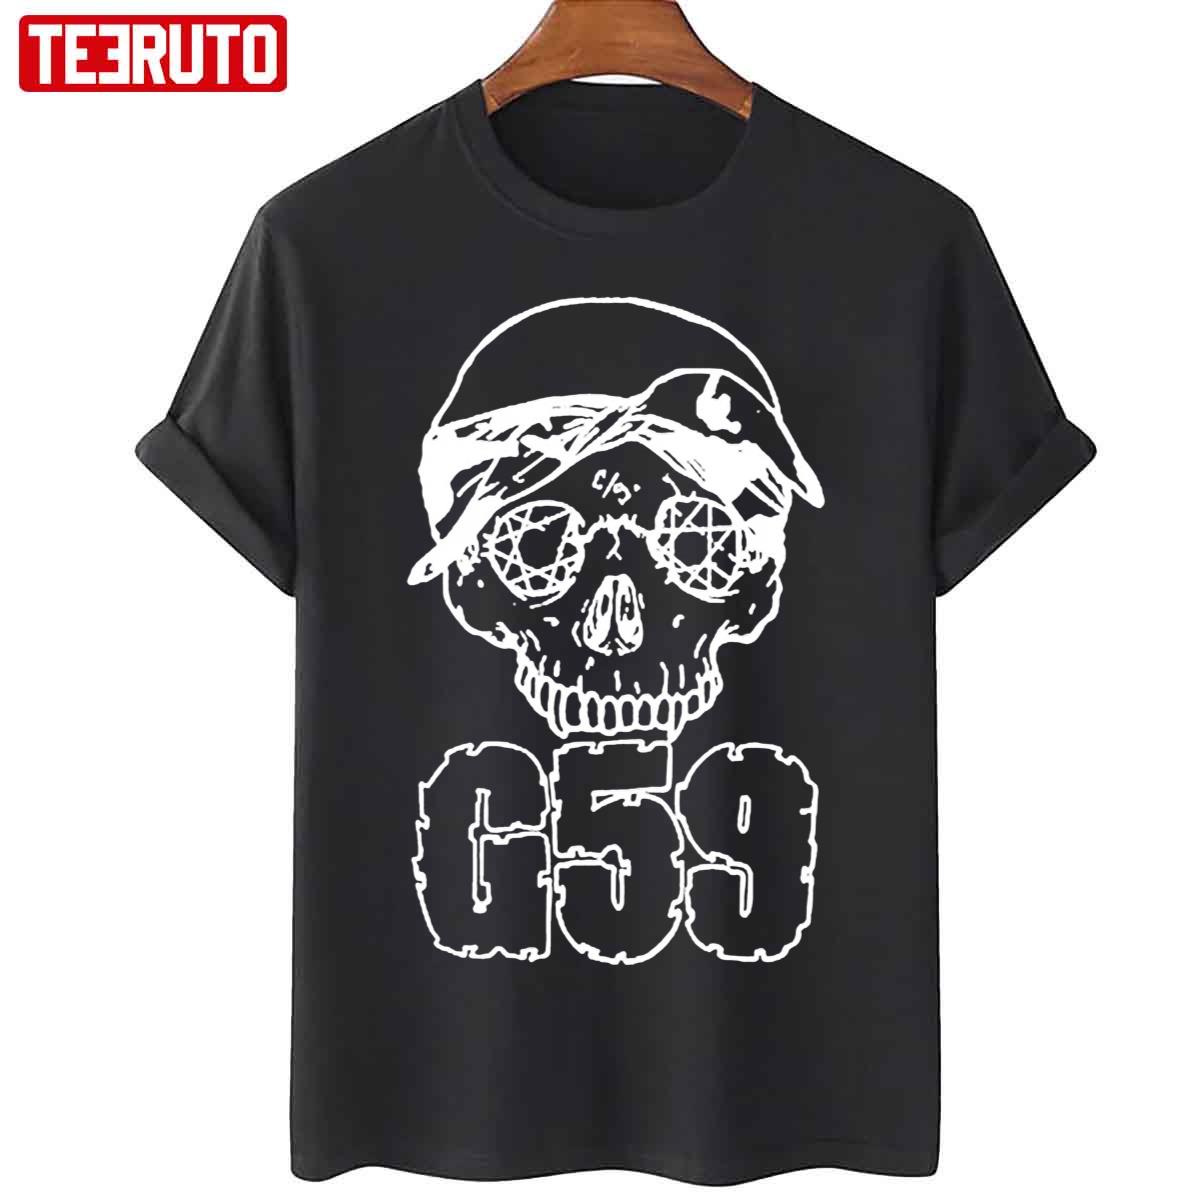 G59 America Unisex T-Shirt - Teeruto